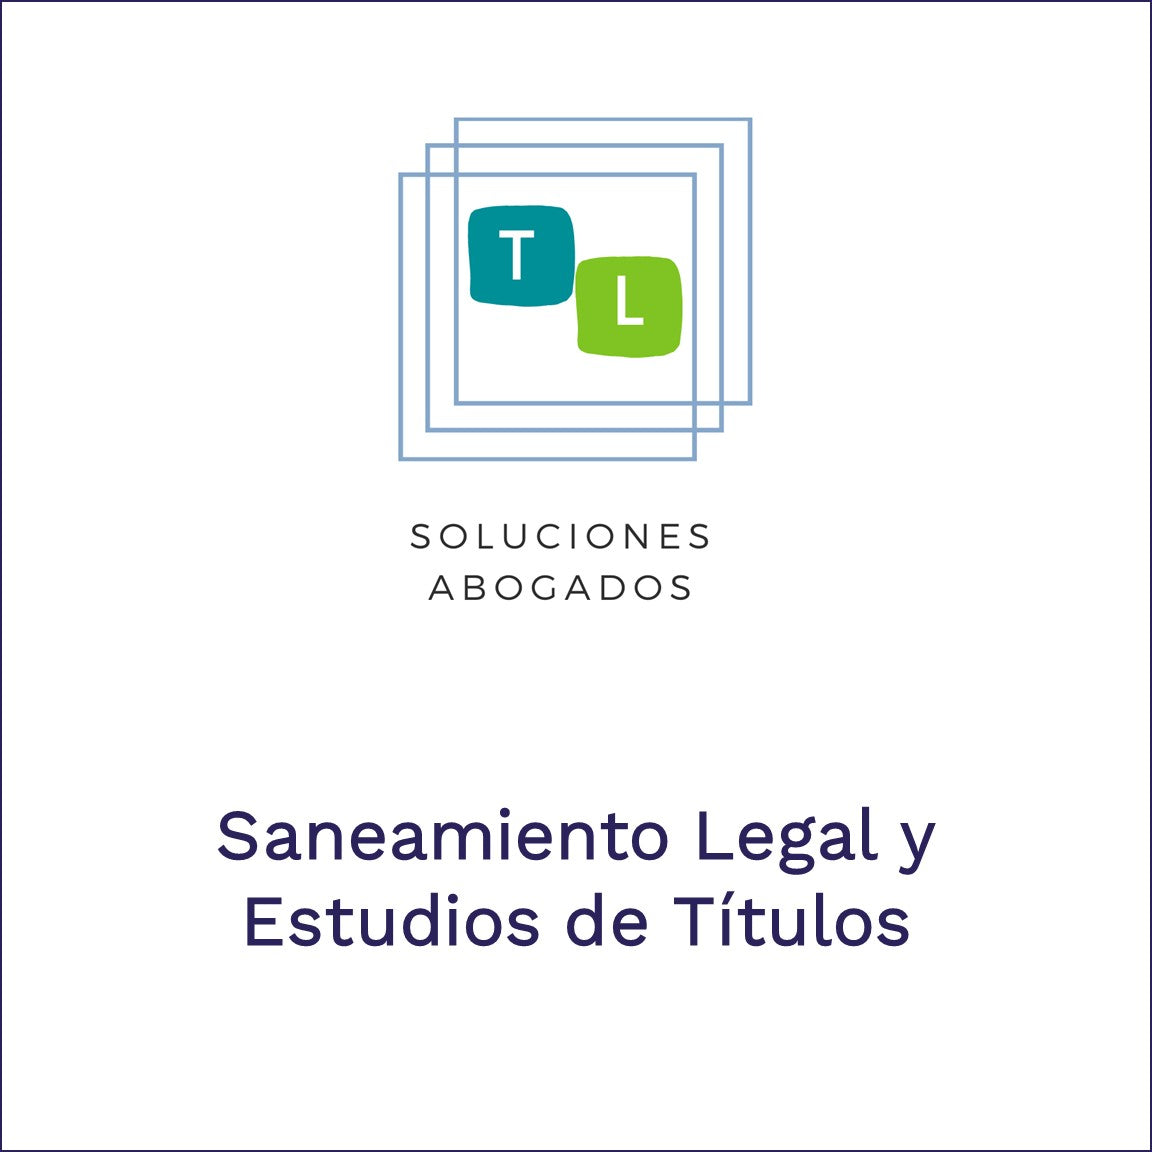 TyL Soluciones Abogados - Saneamiento Legal y Estudio de Títulos